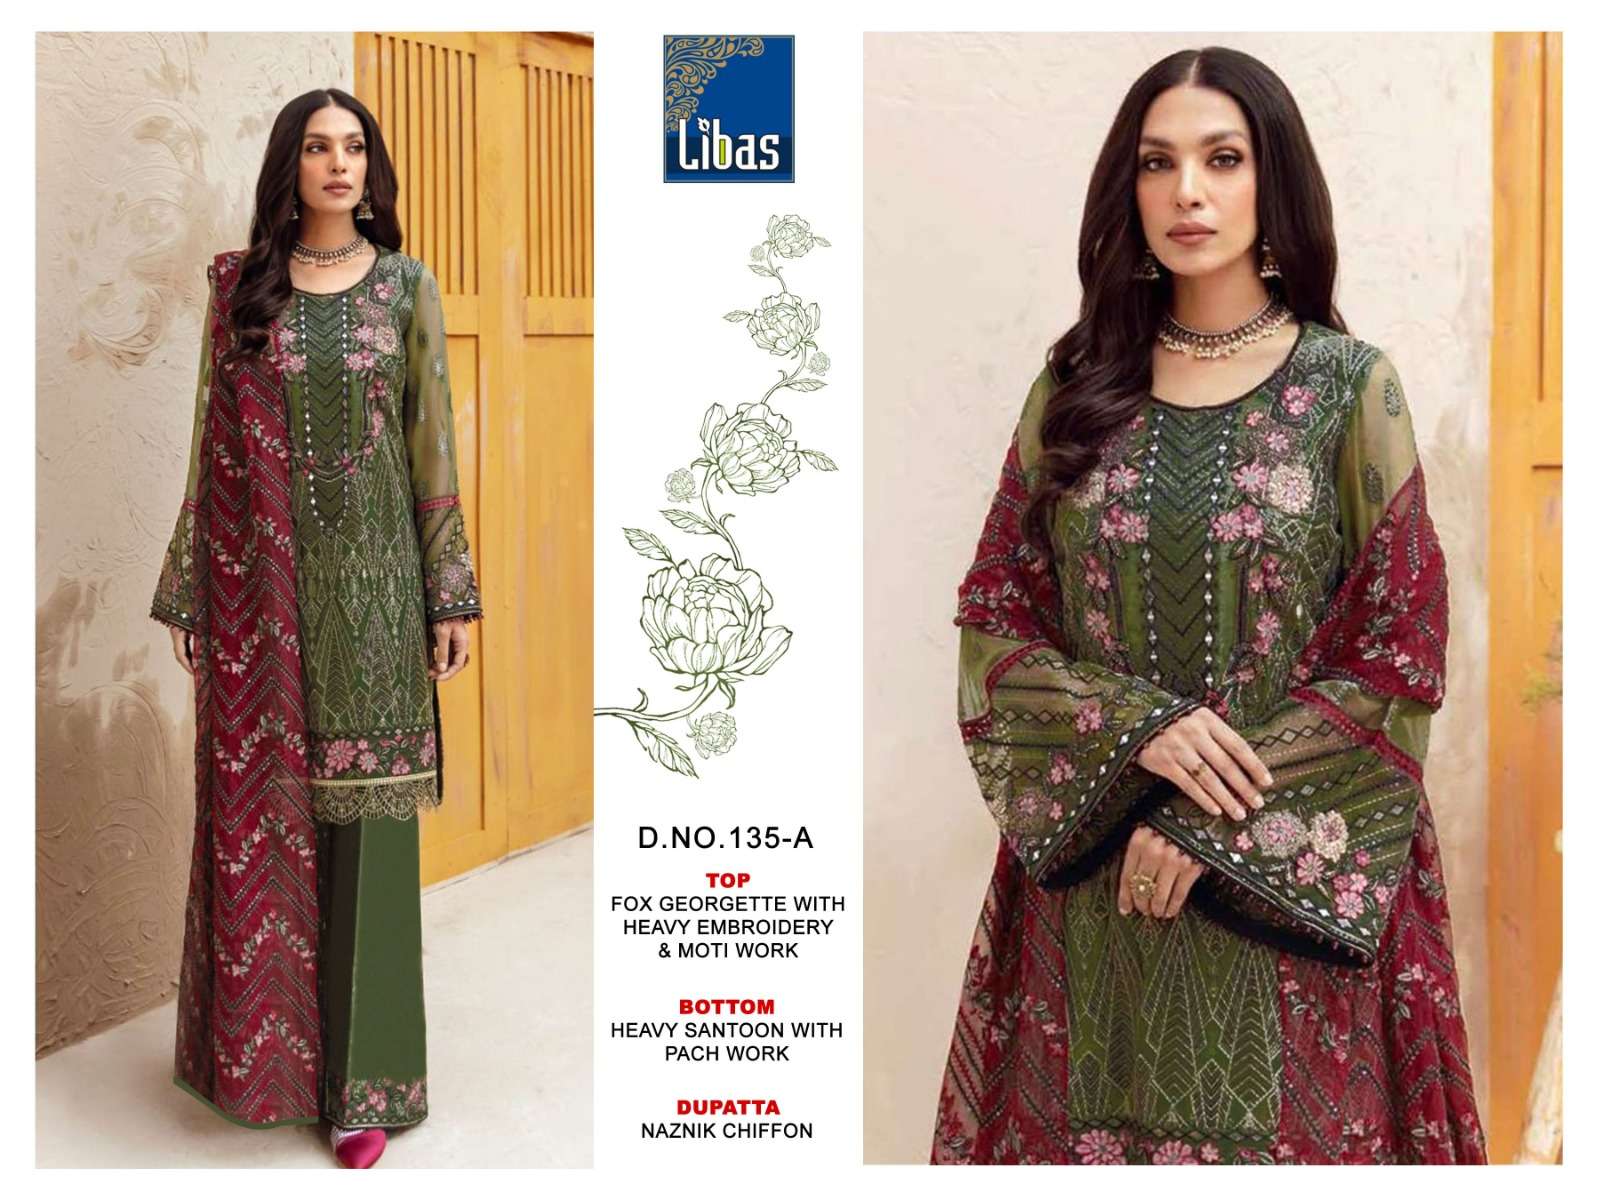 libas 135 series faux georgette designer pakistani salwar suits online market surat 